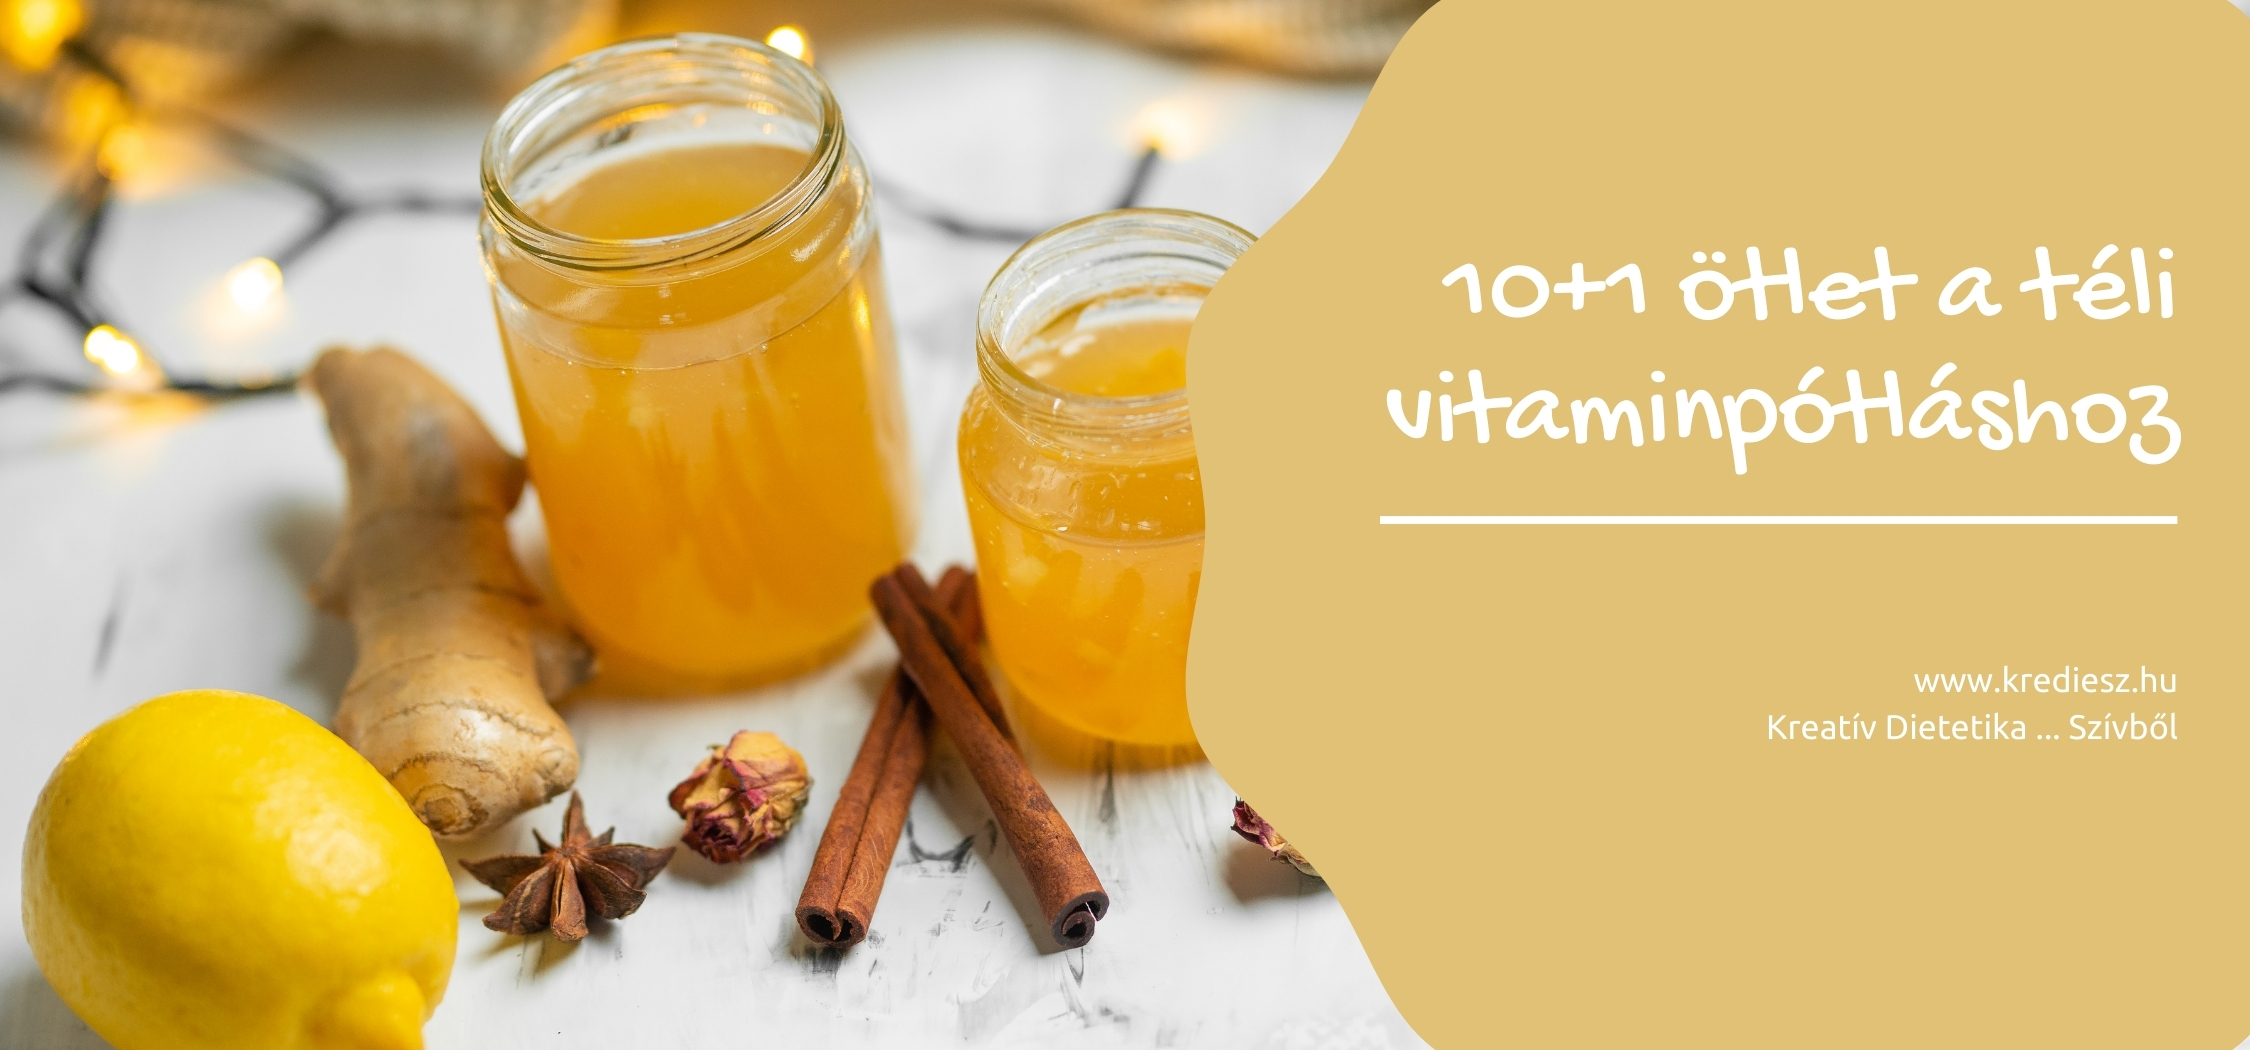 10+1 ötlet a téli vitaminpótláshoz